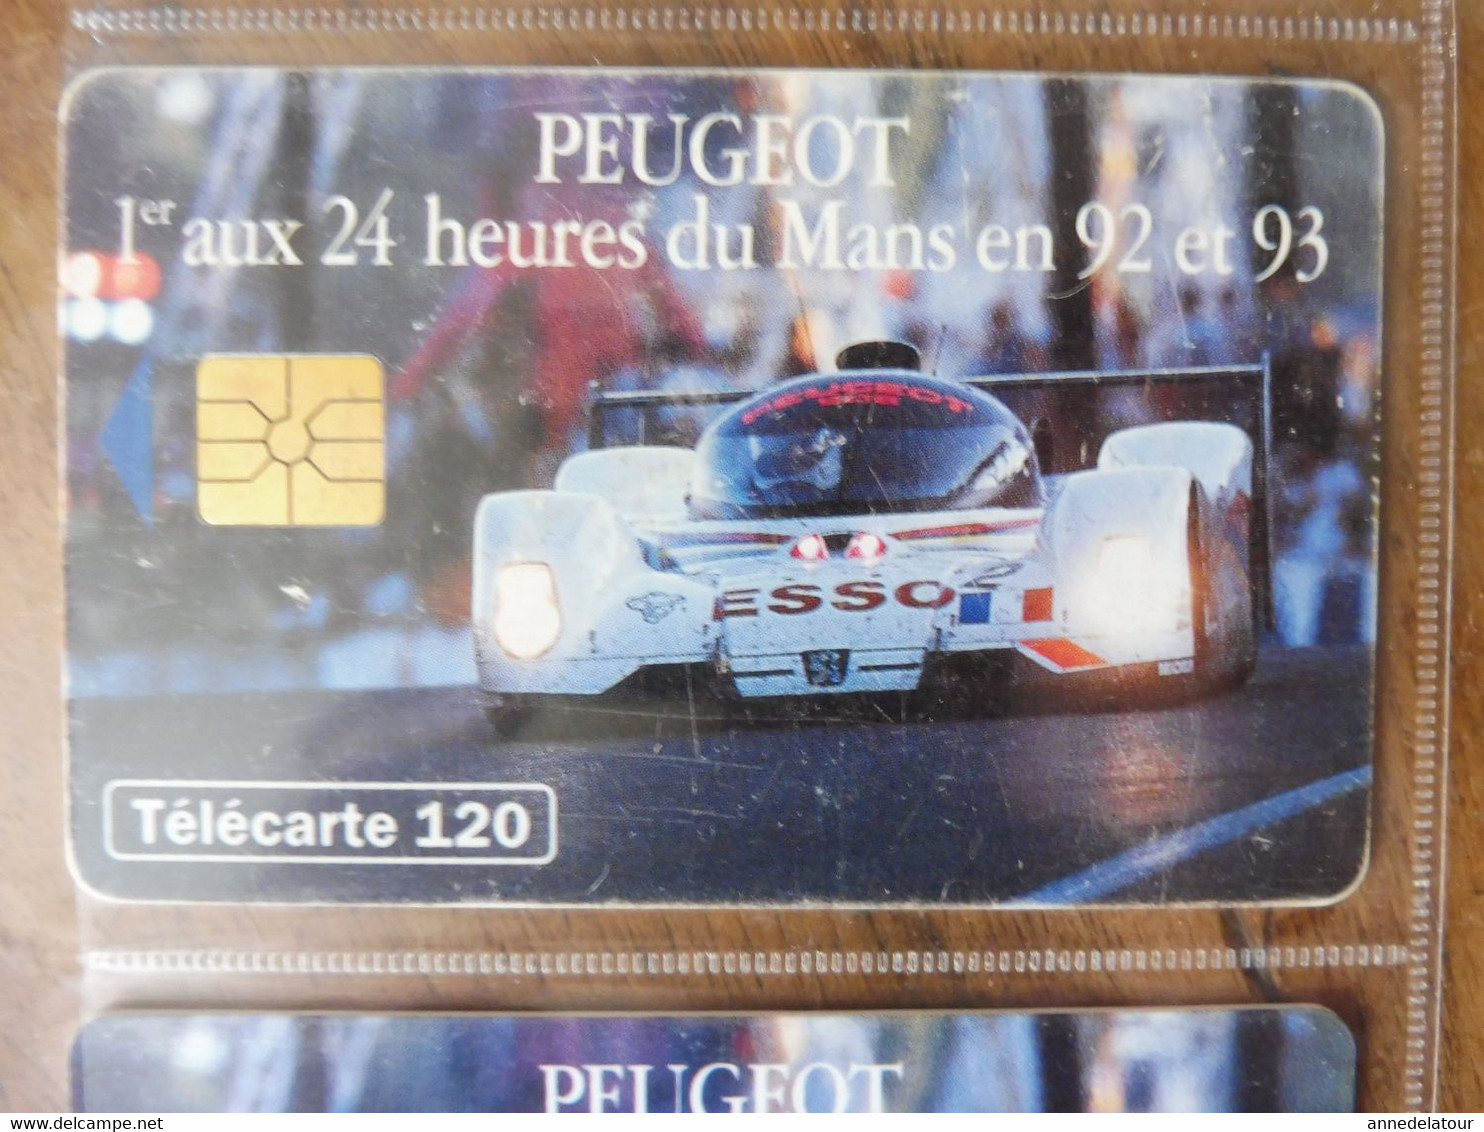 10 télécartes (automobiles de courses des 24 heures du Mans)  FRANCE TELECOM -->  PEUGEOT se bat pour ESSO